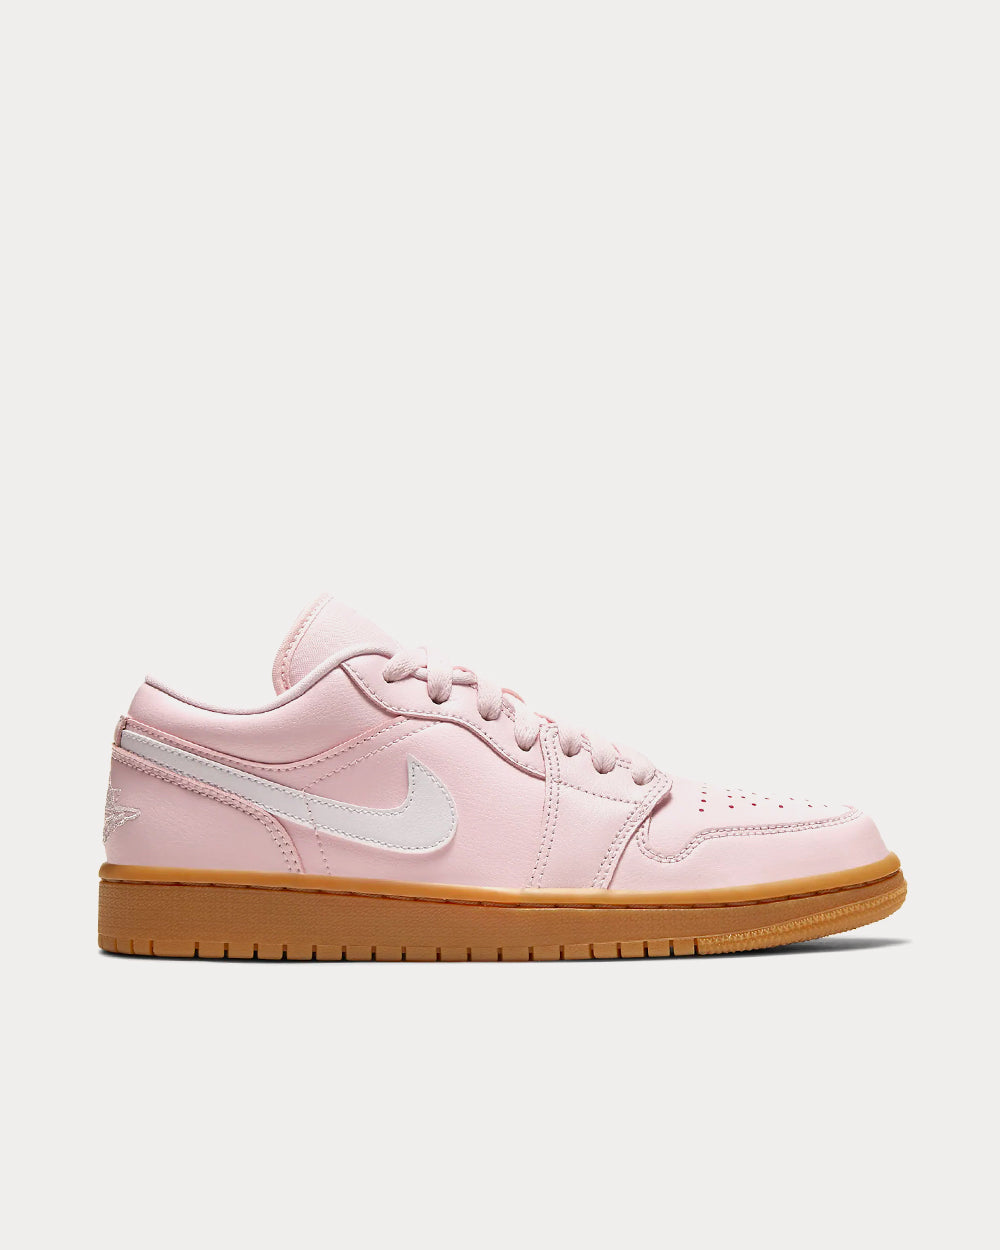 Air Jordan 1 Low Arctic Pink / Gum Light Brown / White Low Top Sneakers